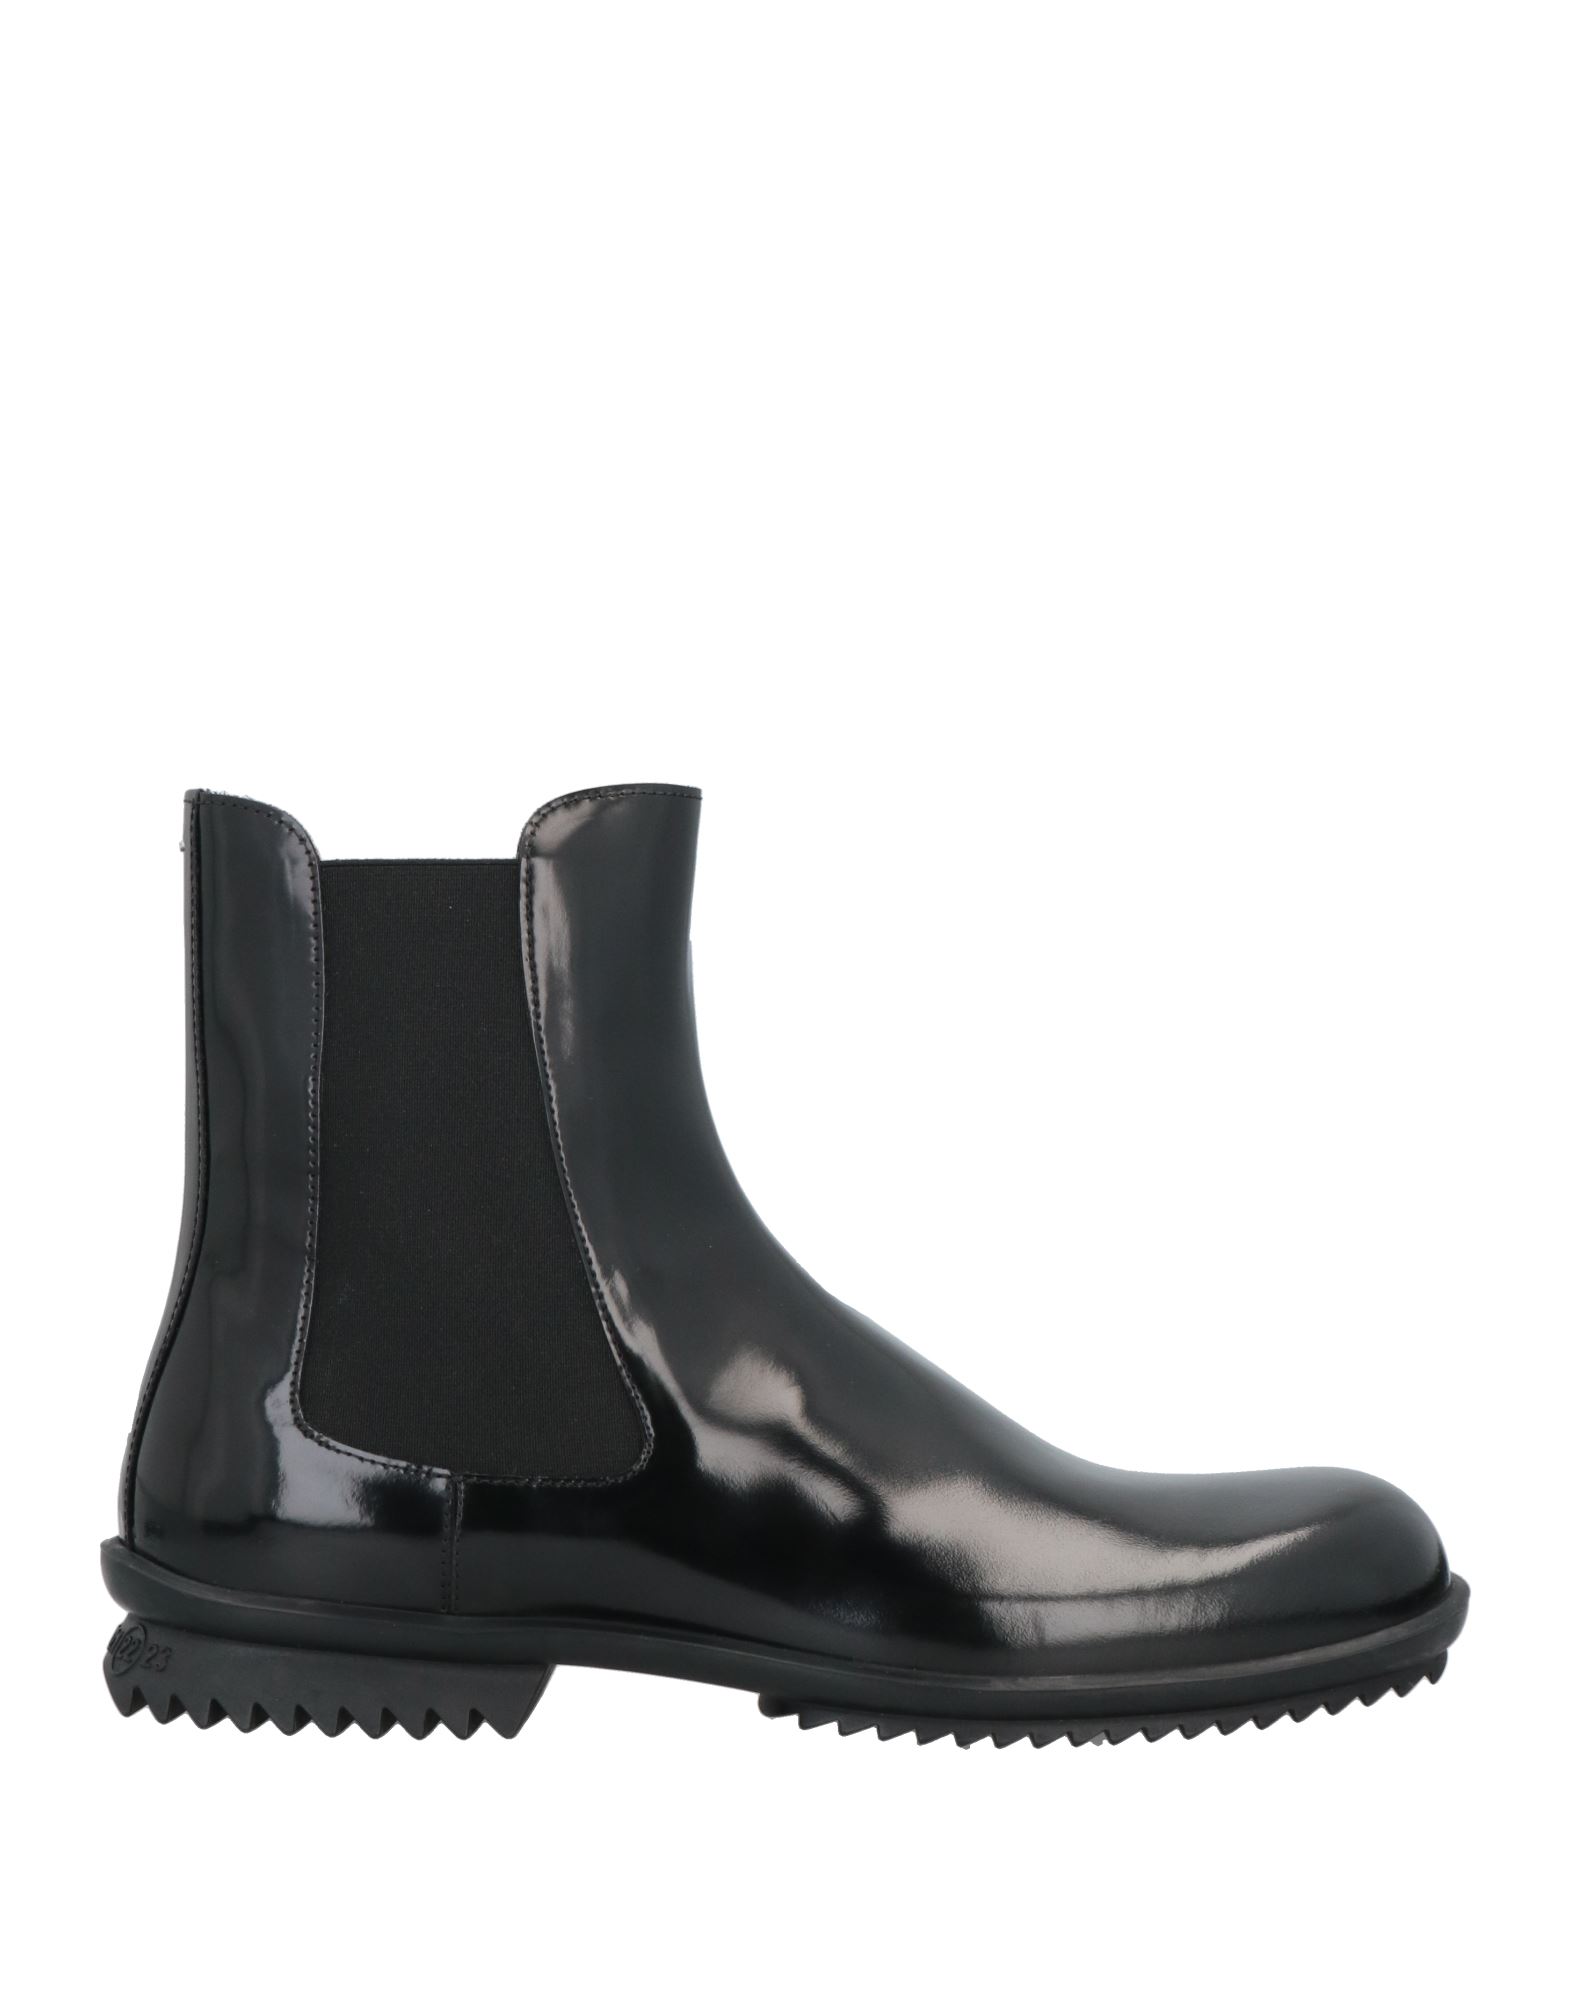 Shop Maison Margiela Man Ankle Boots Black Size 8 Soft Leather